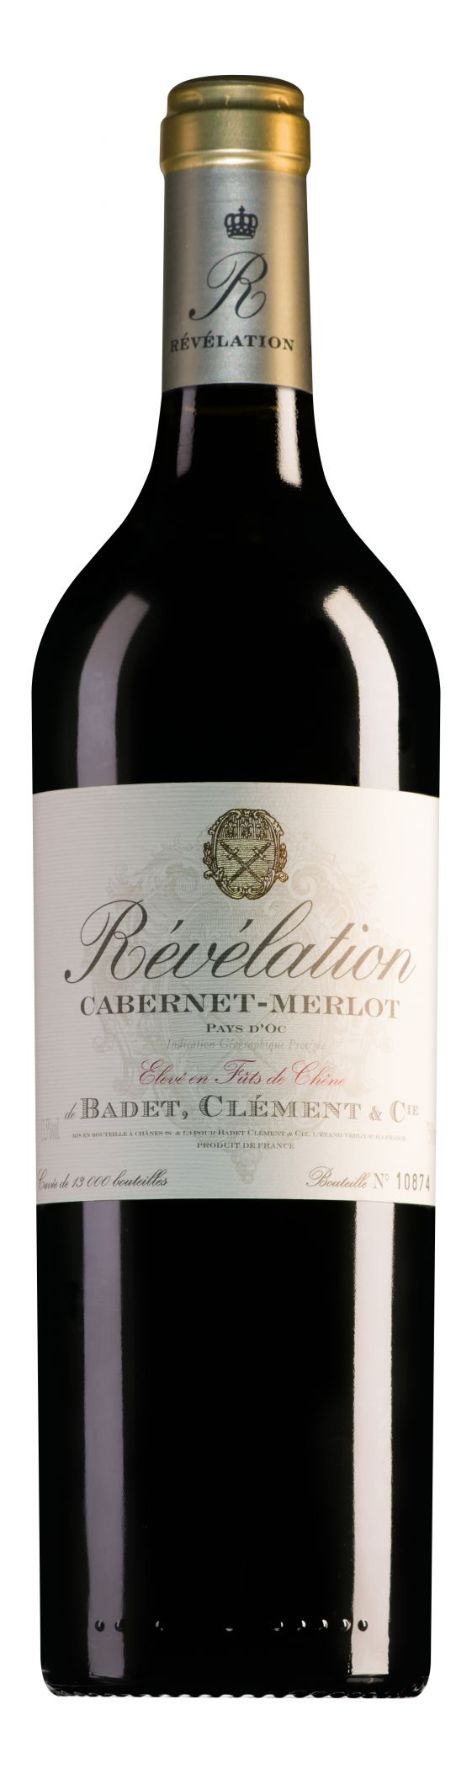 Revelation Cabernet-Merlot kopen